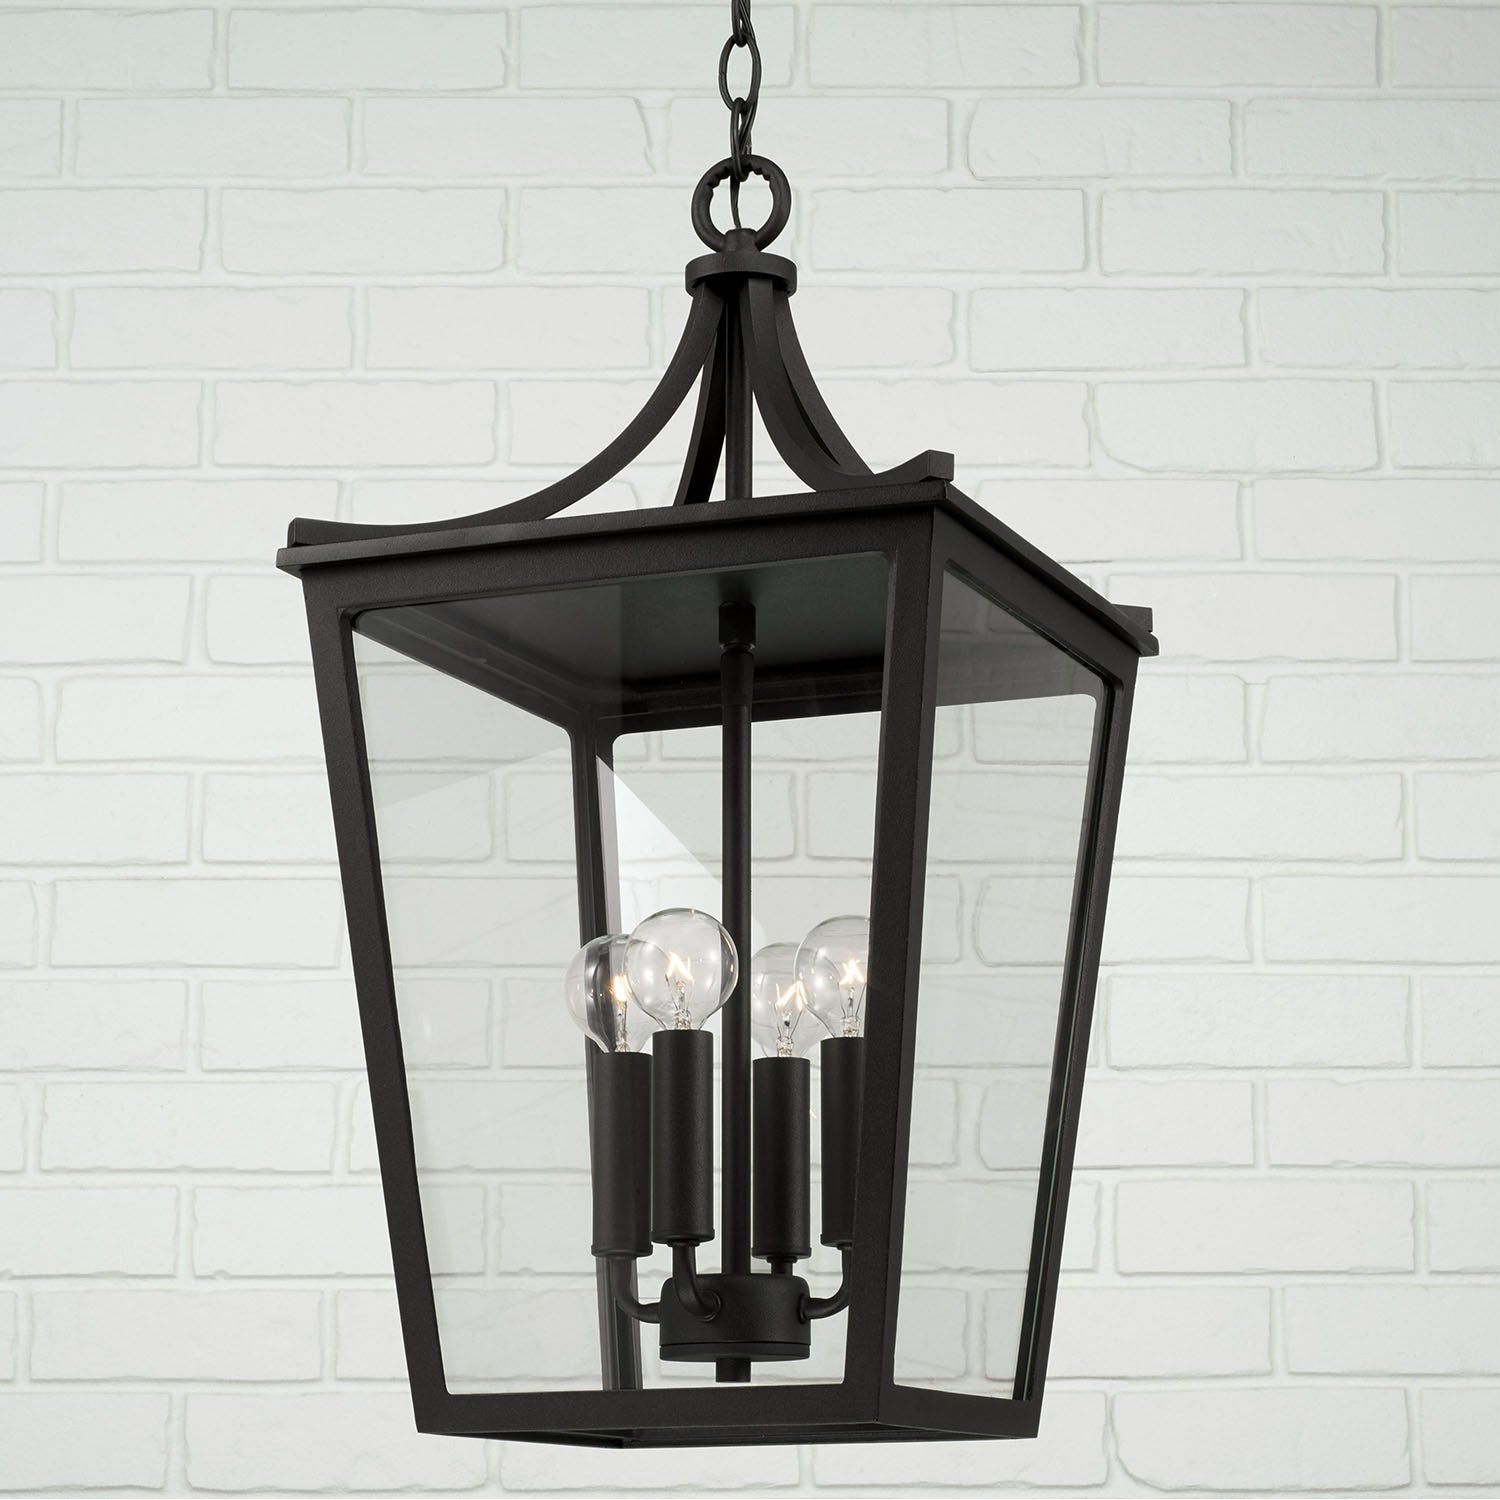 Adair 4-Light Outdoor Hanging Lantern